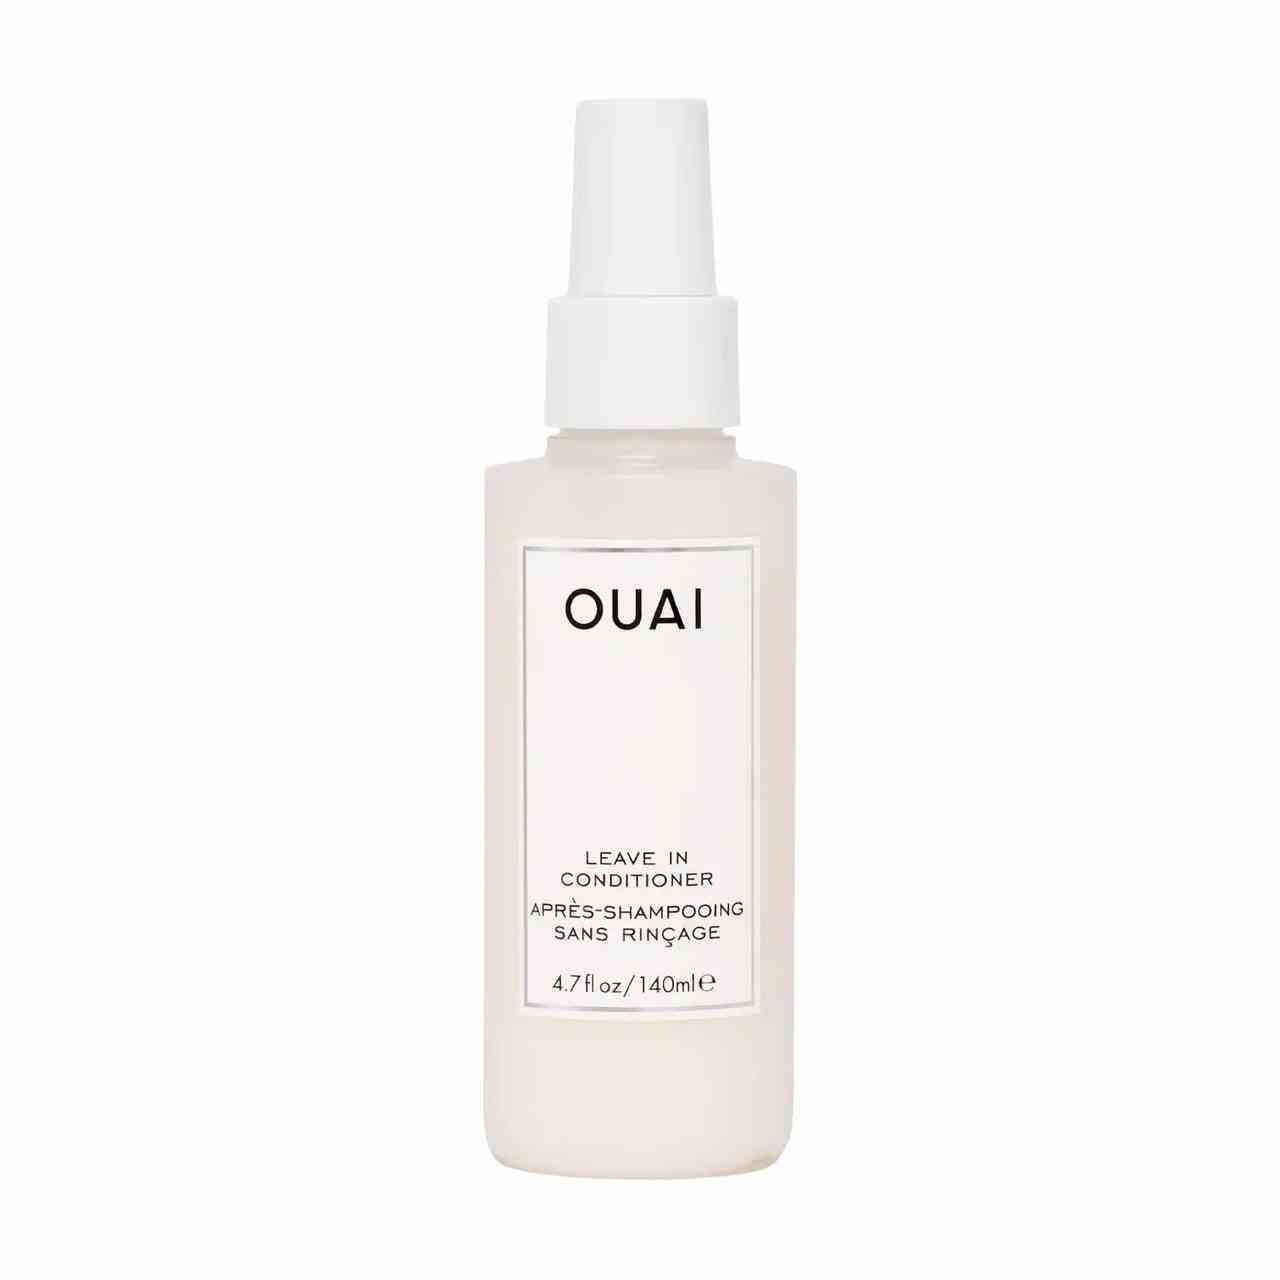 Ouai Leave-In Conditioner weiße Sprühflasche auf weißem Hintergrund